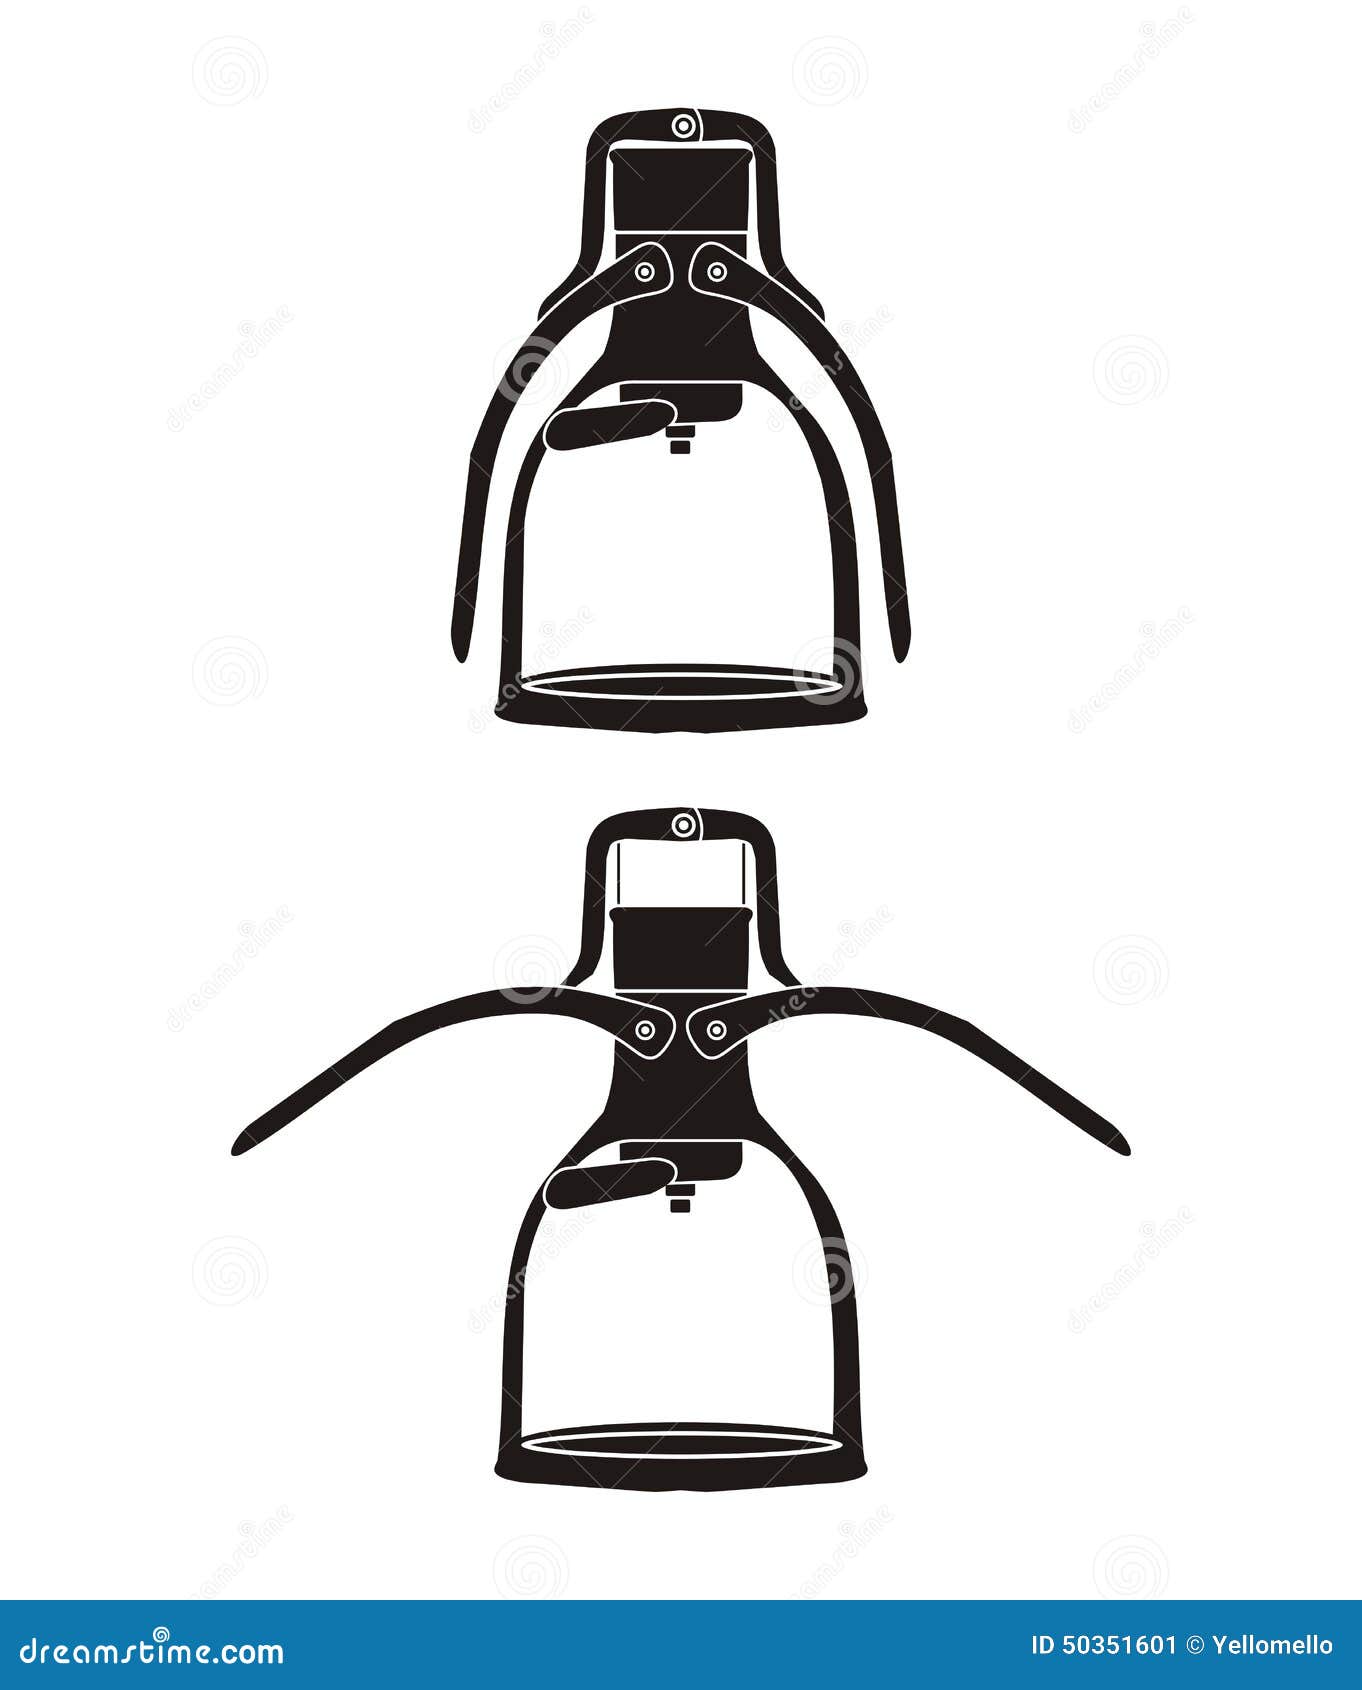 manual espresso maker - silhouette